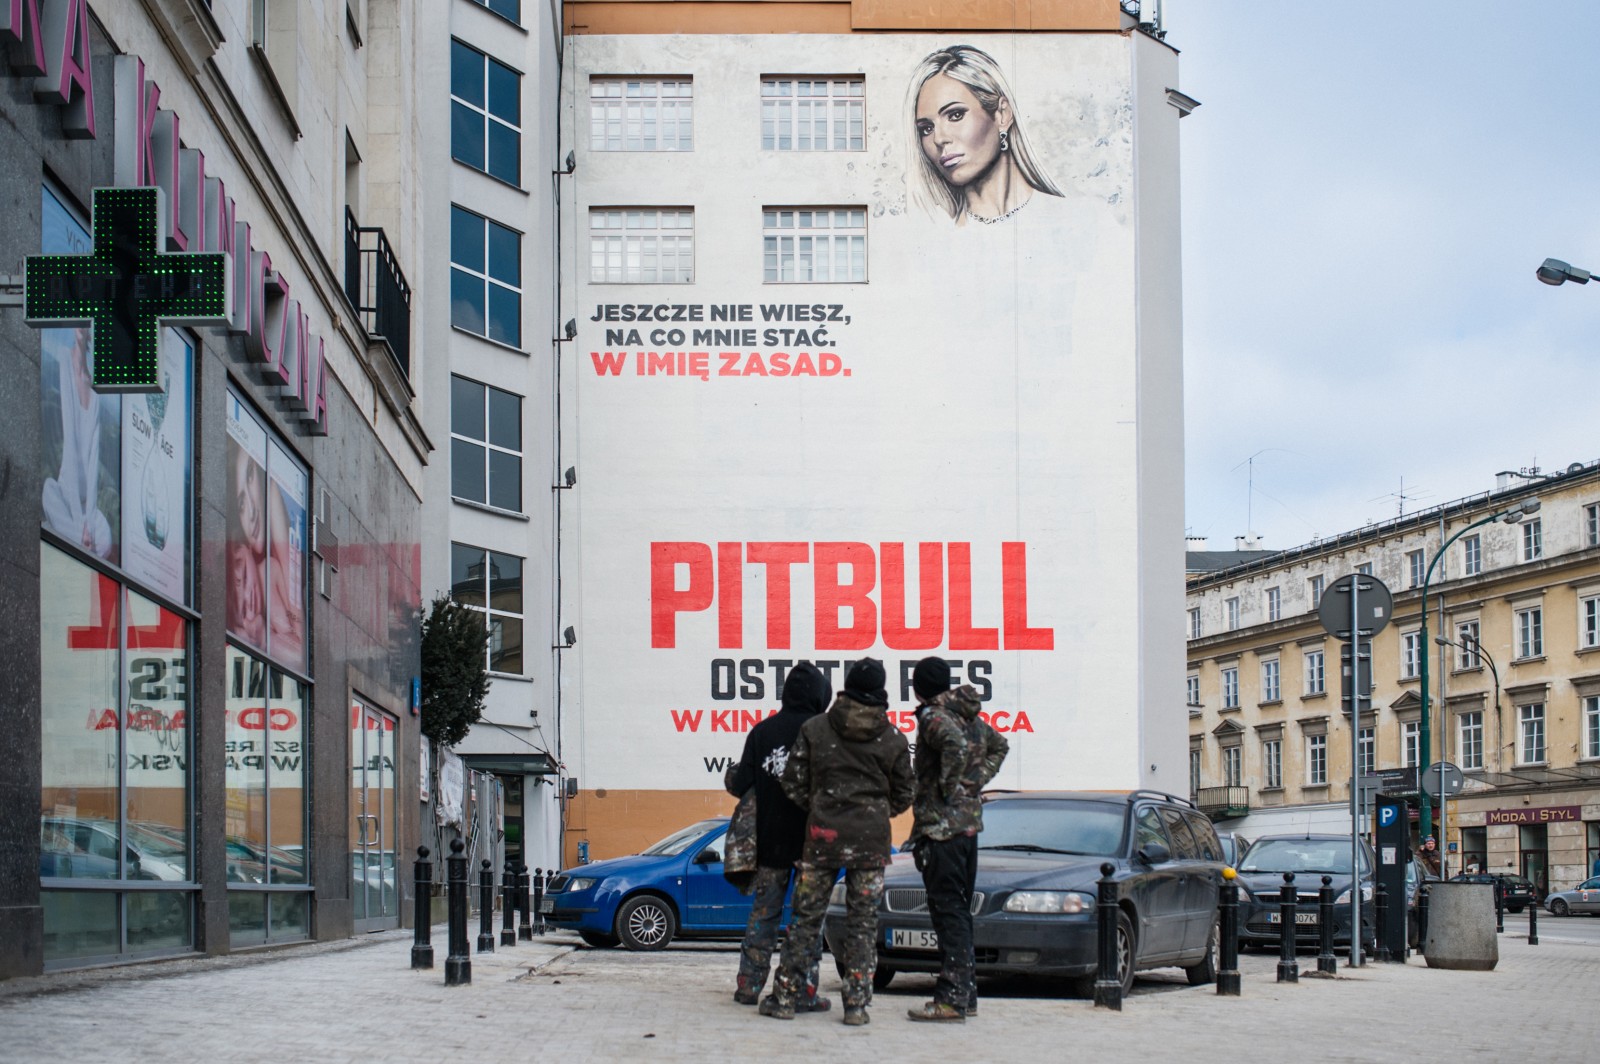 Mural reklamowy do filmu Pitbull Ostatni pies przy ulicy Brackiej 25 | Pitbull. Ostatni pies | Portfolio